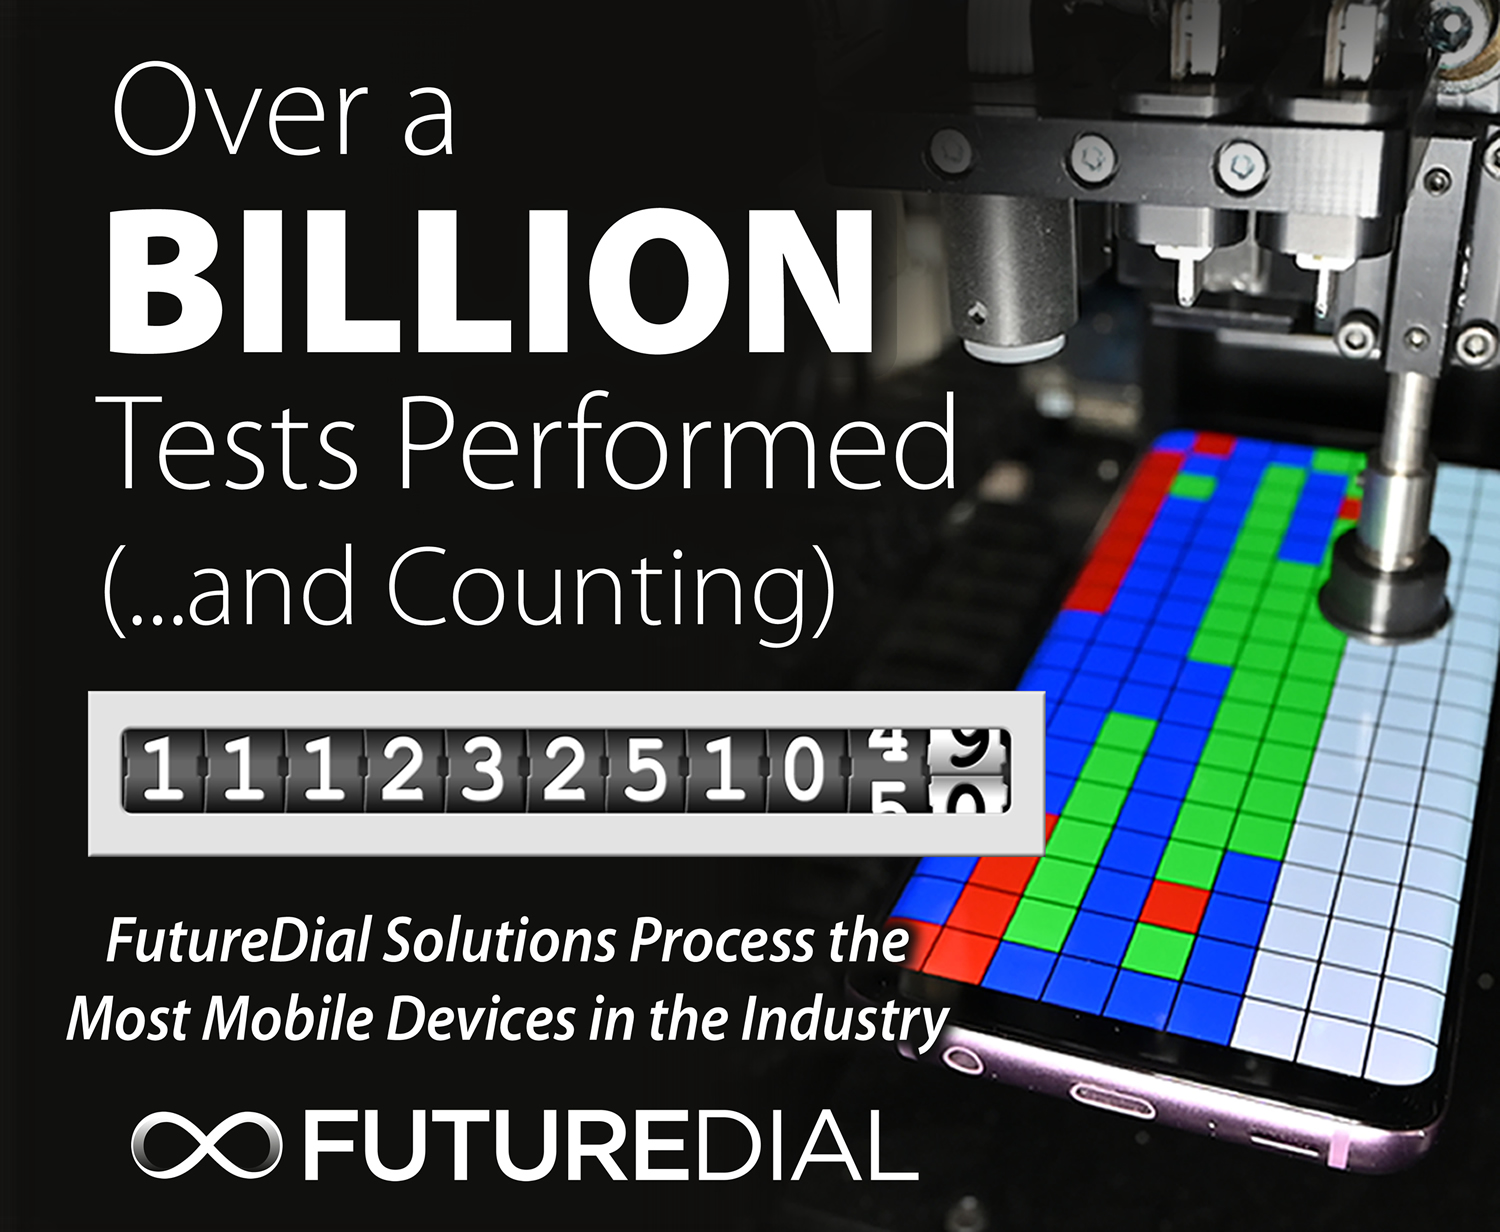 Les solutions logicielles et de traitement robotique FutureDial ont été utilisées par des clients de l'industrie pour tester fonctionnellement plus d'un milliard de téléphones portables d'occasion en vue de leur revente sur les marchés secondaires.